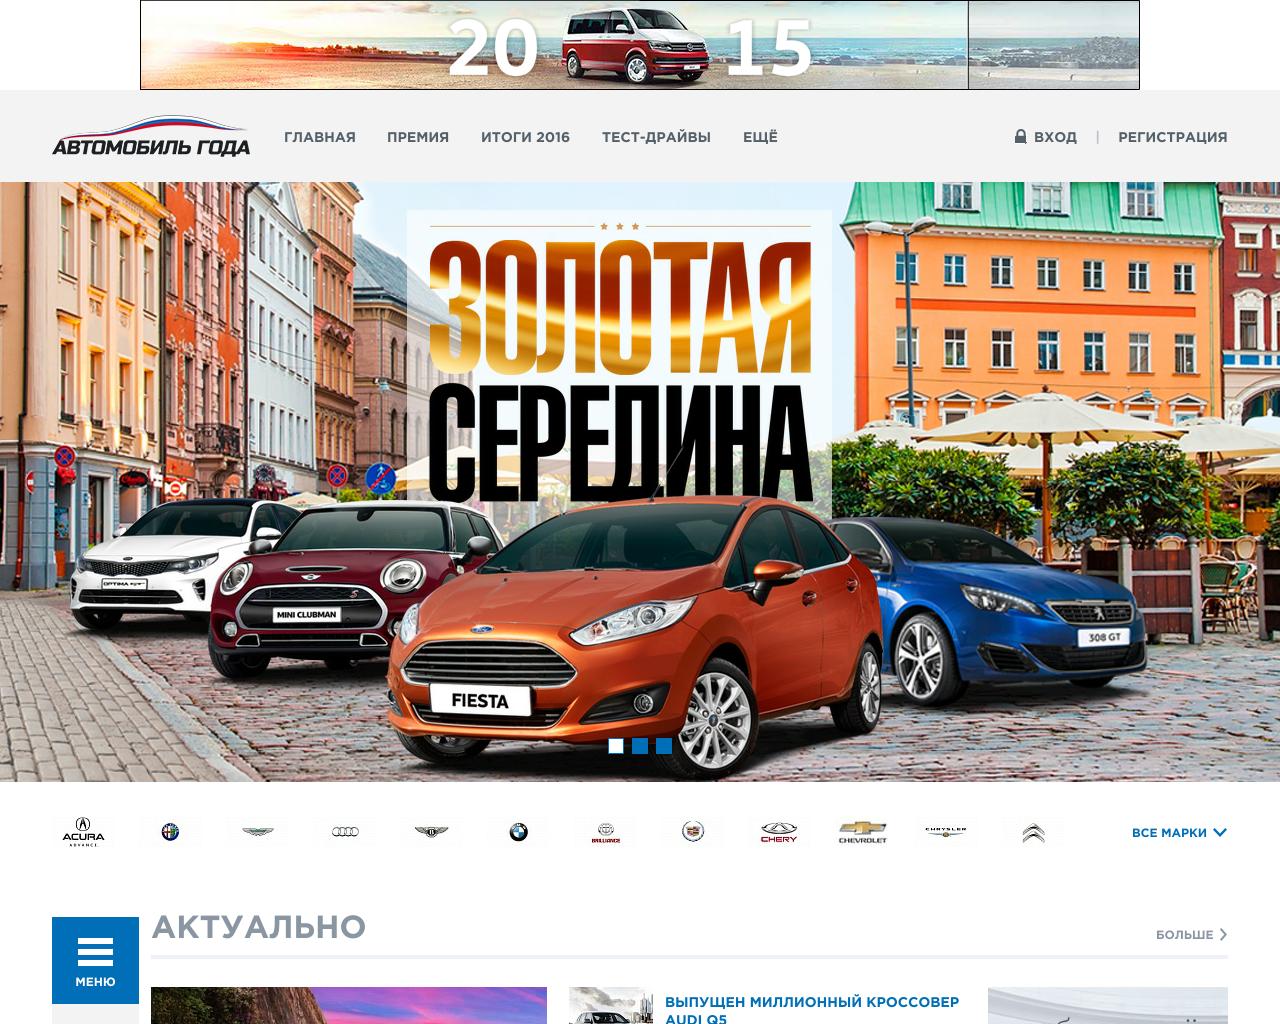 Изображение сайта autogoda.ru в разрешении 1280x1024